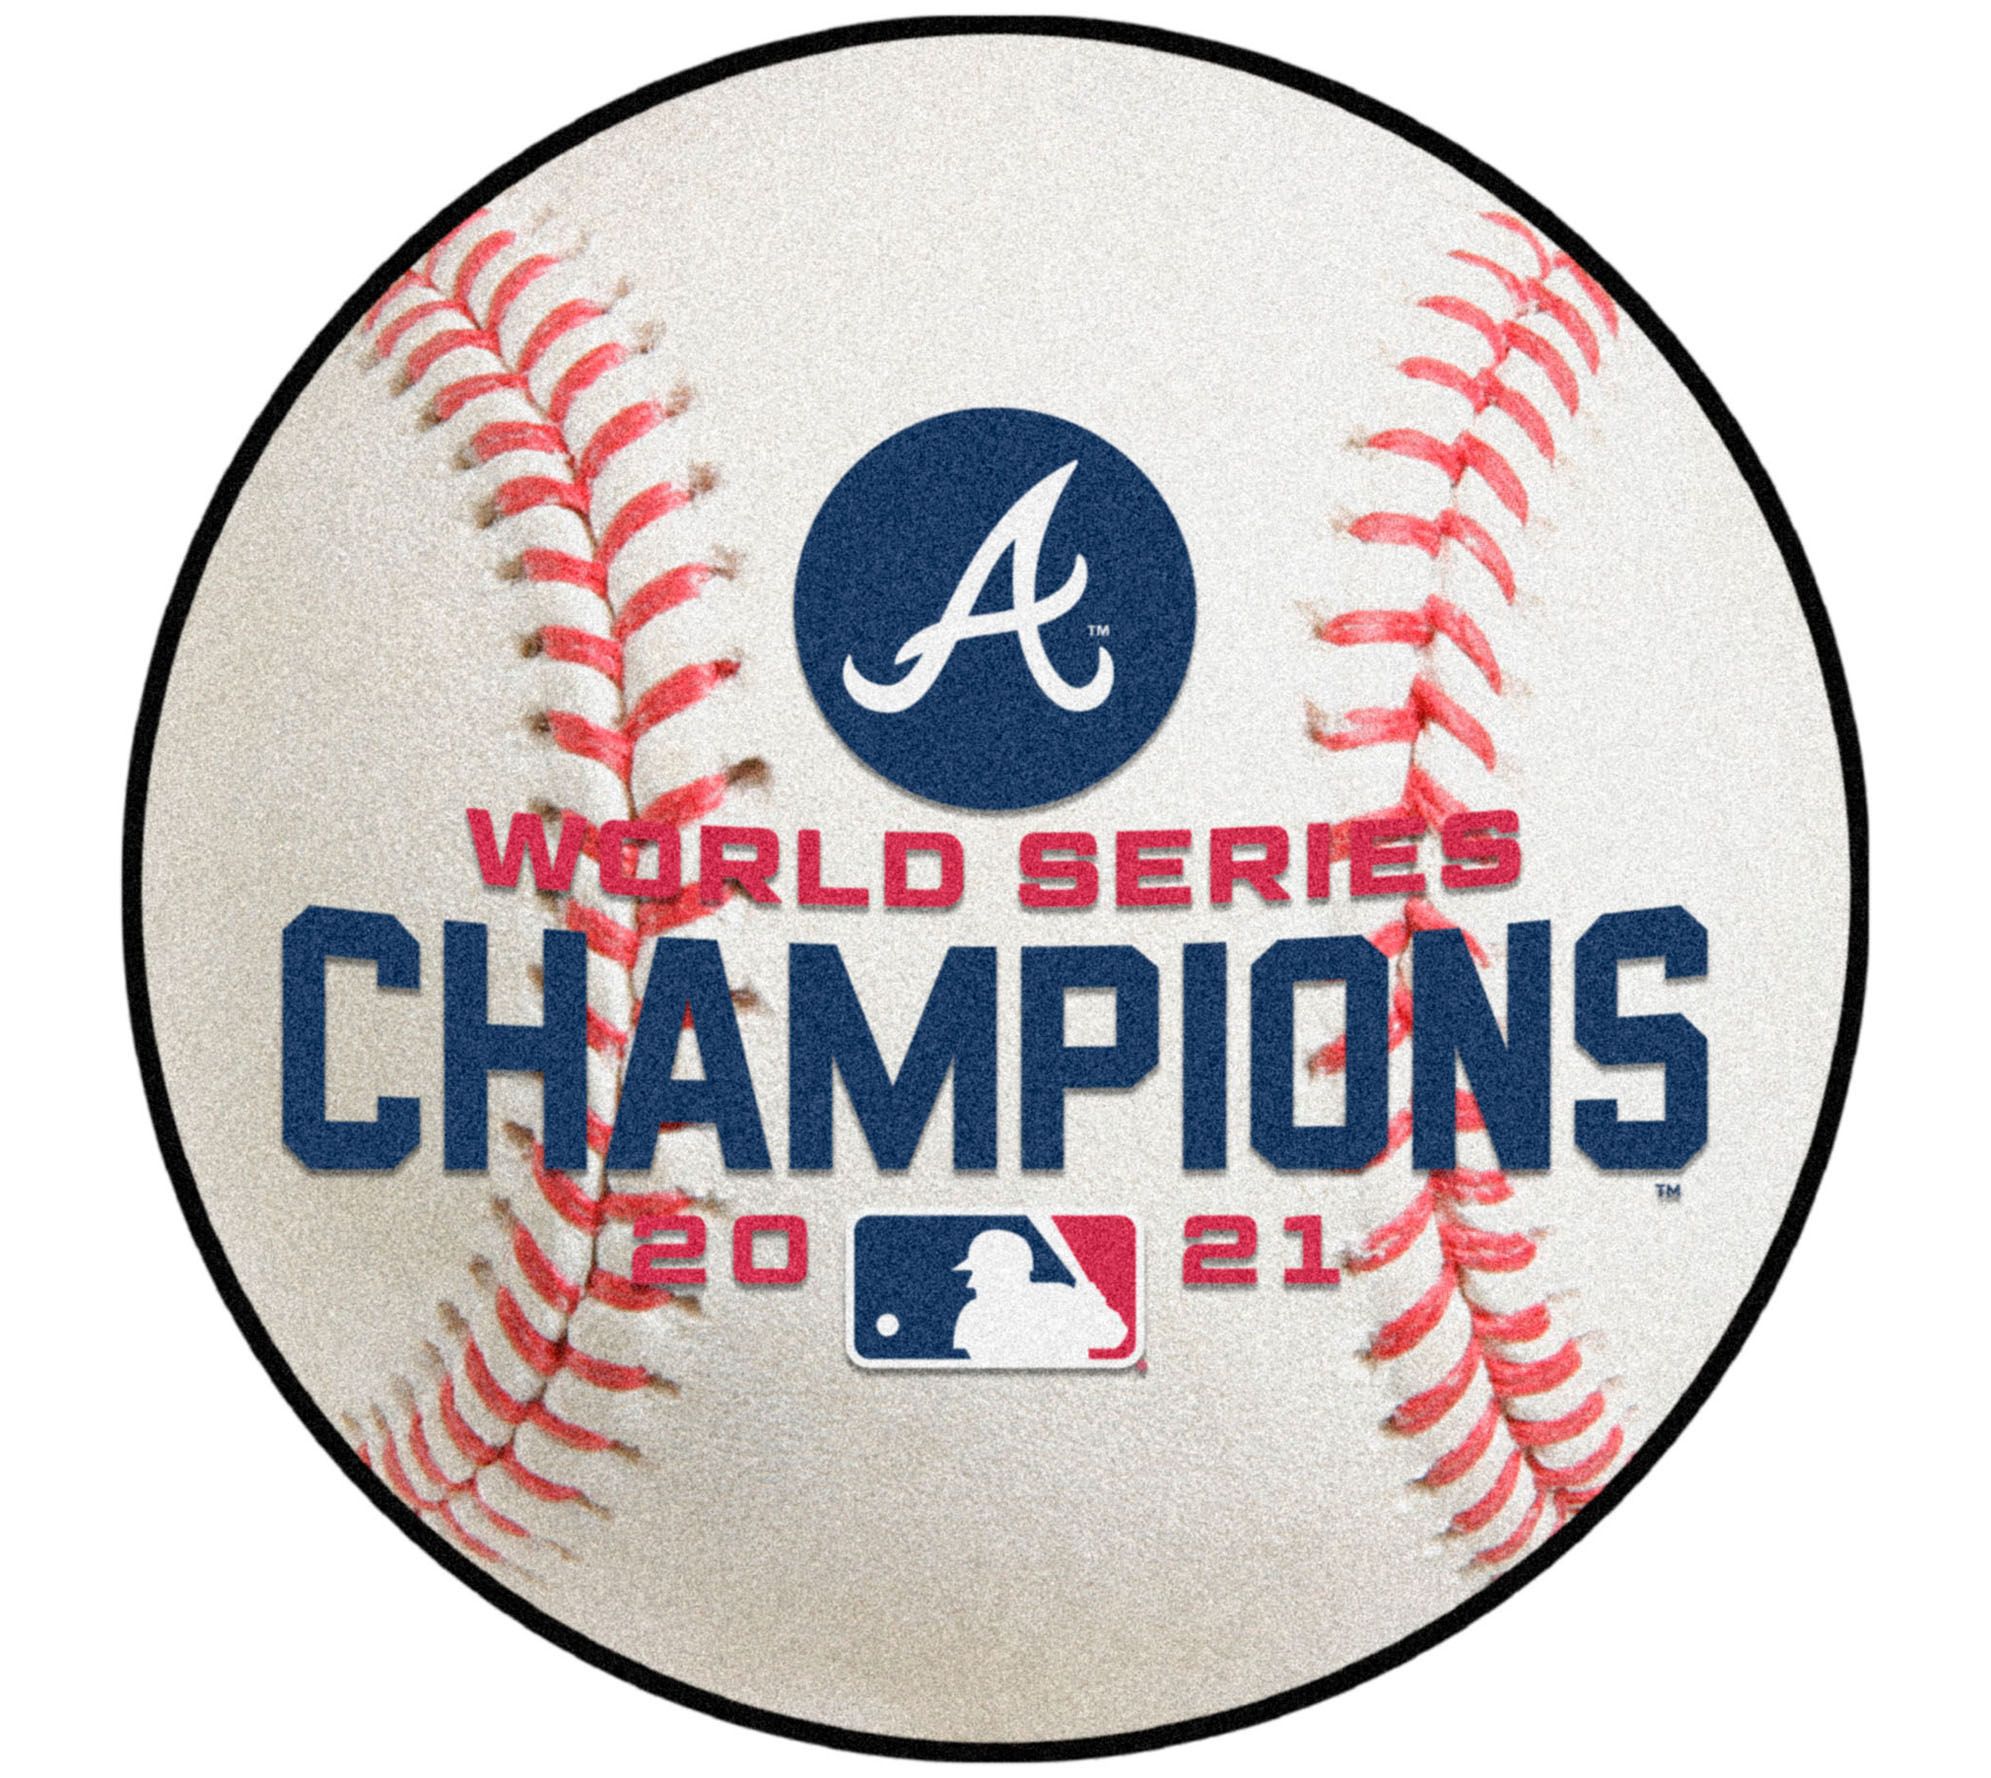 Atlanta Braves MLB World Series Champions 2021 Custom Shirt For Men -  Trends Bedding